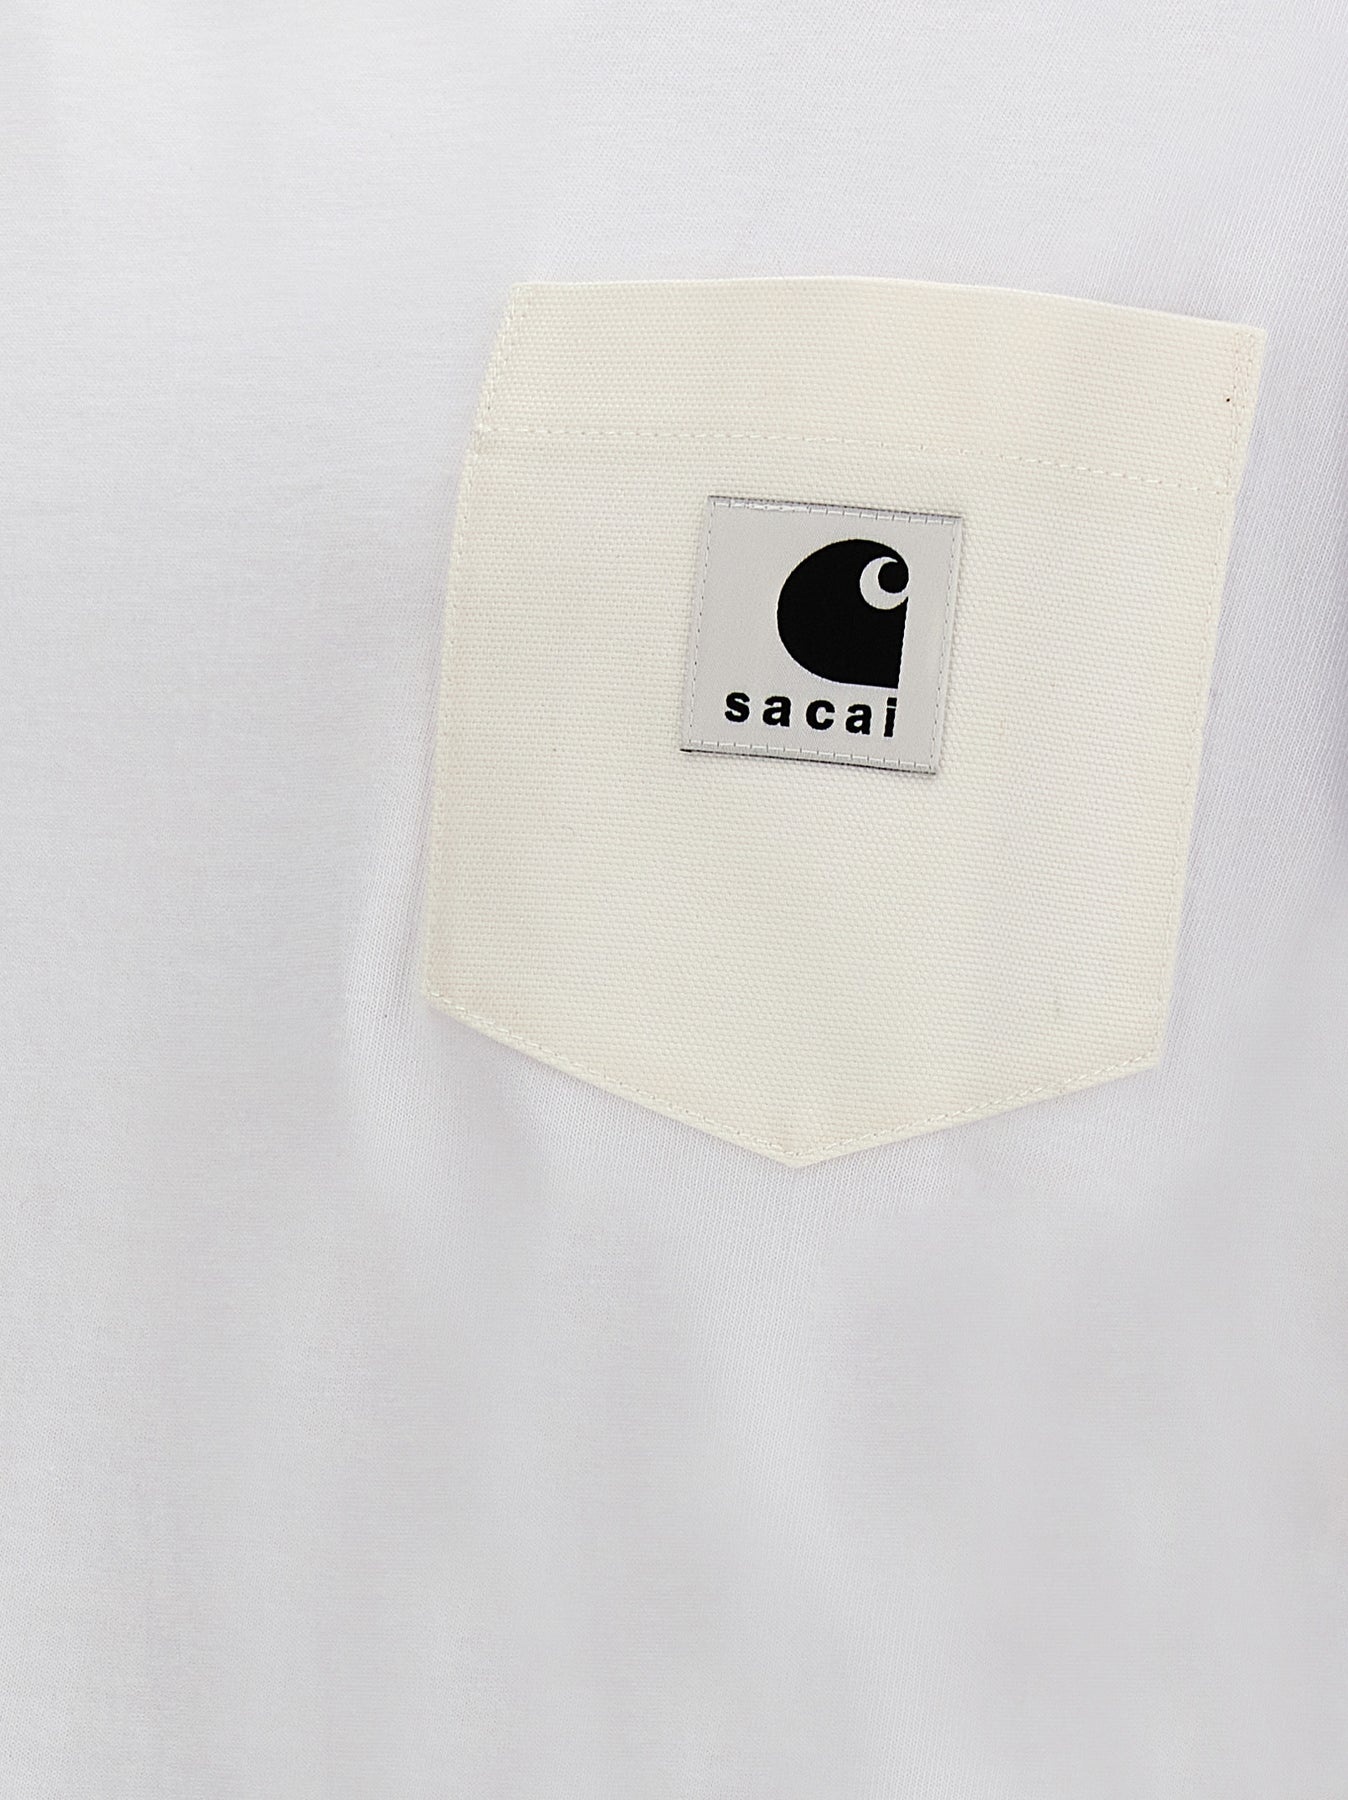 Sacai X Carhartt Wip T-Shirt White - 5